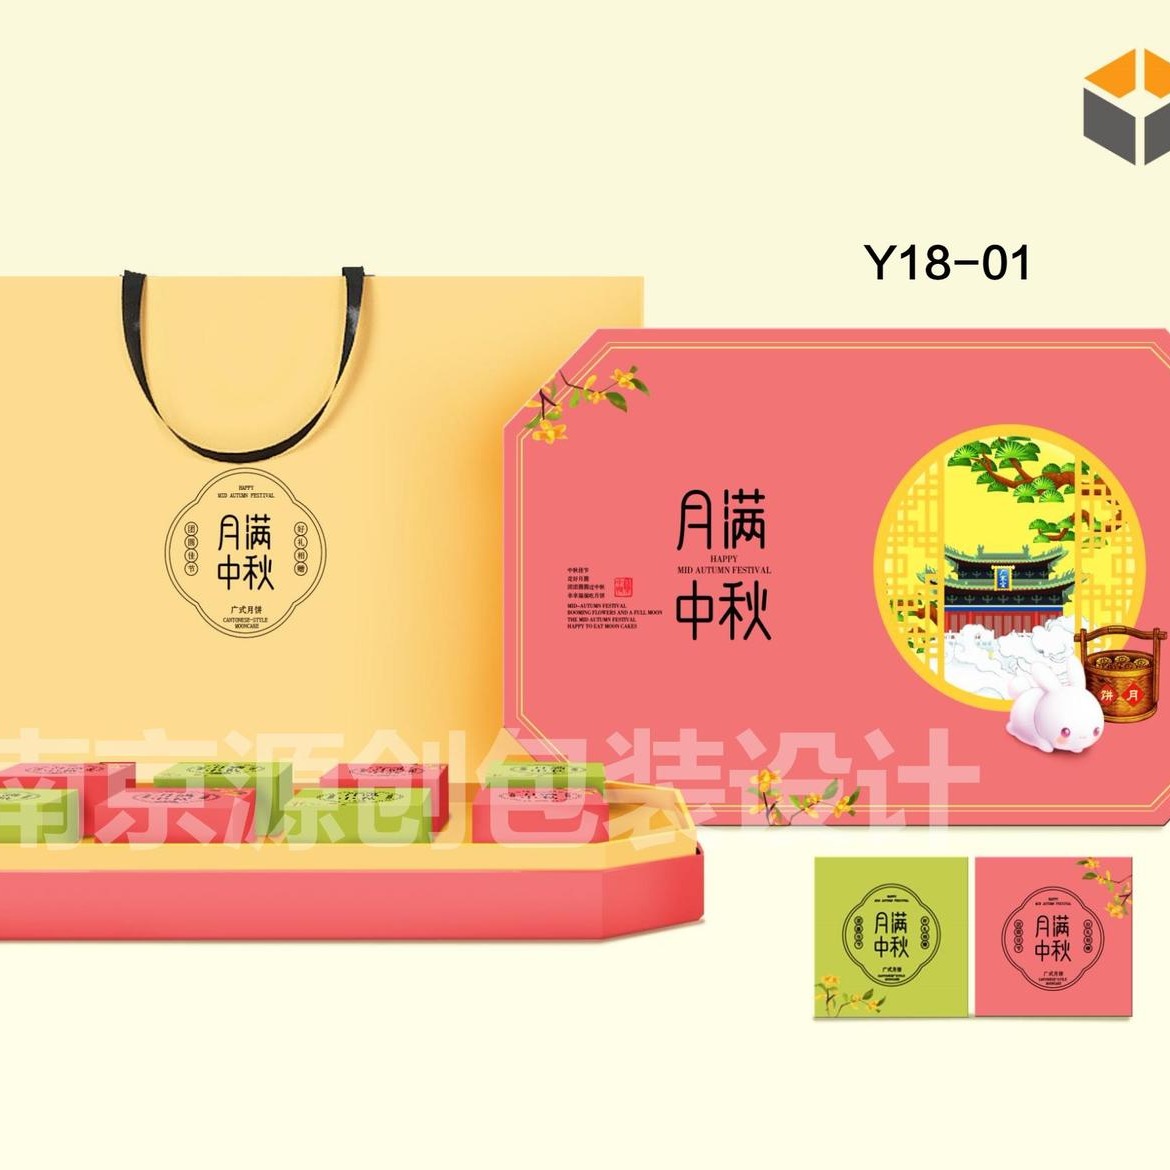 中秋礼月包装盒设计 南京源创包装专业设计生产礼品盒包装图片